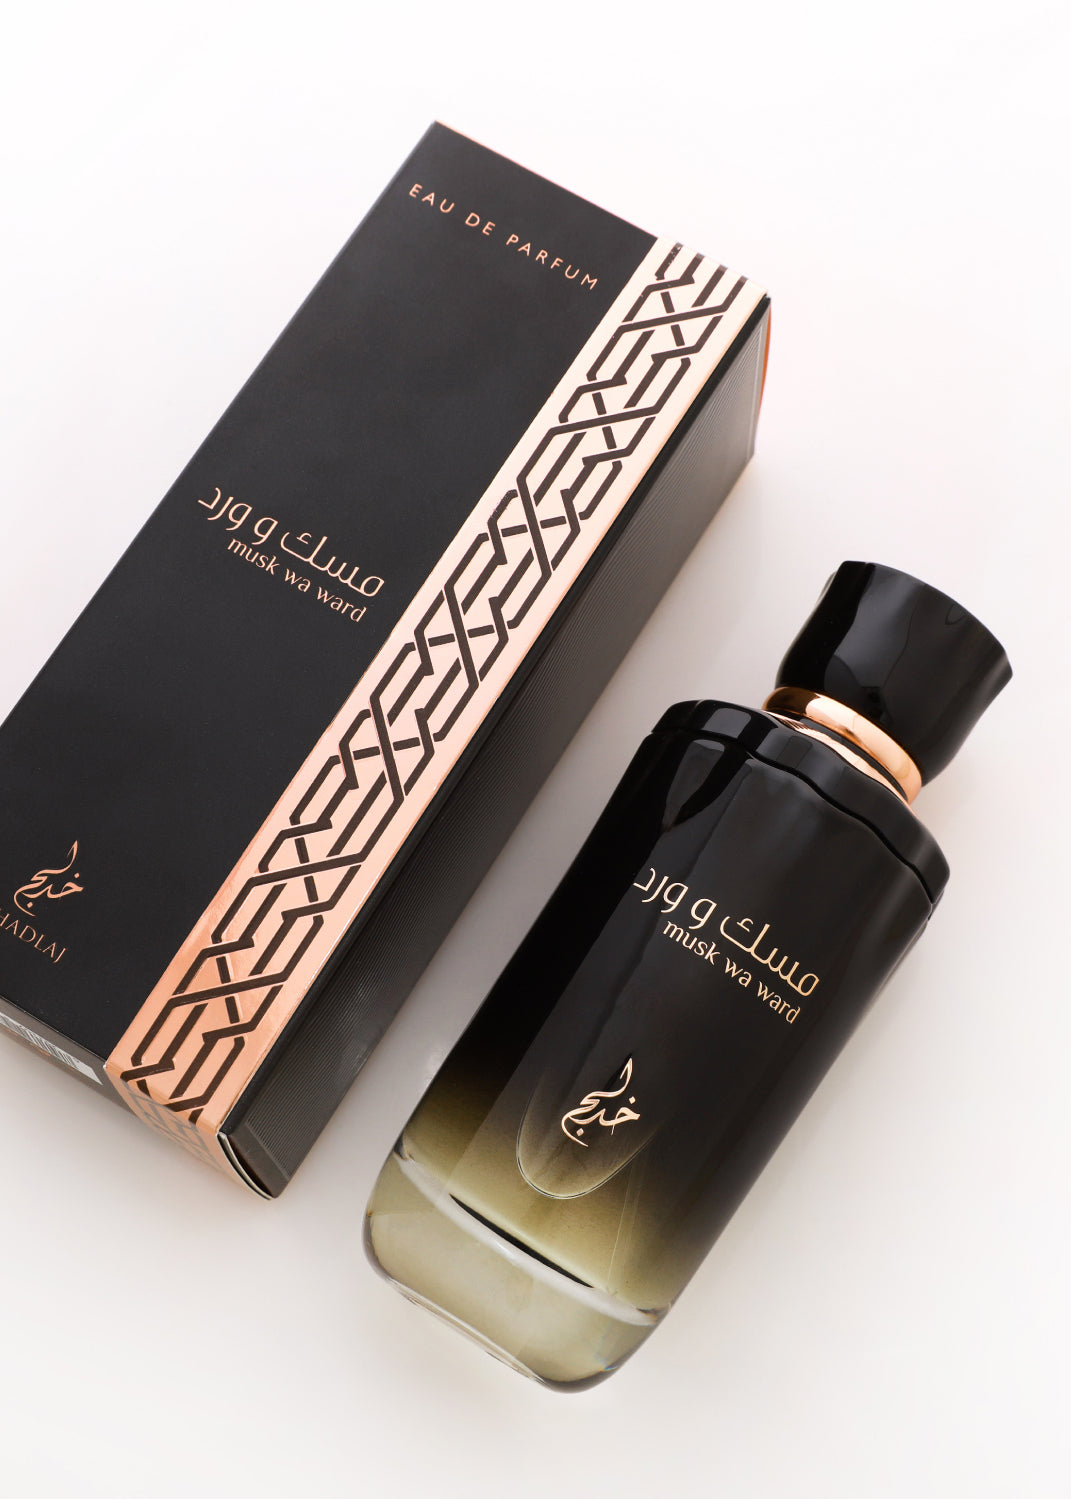 Musk Wa Ward Women's Eau De Perfume 100ml By Khadlaj Perfume